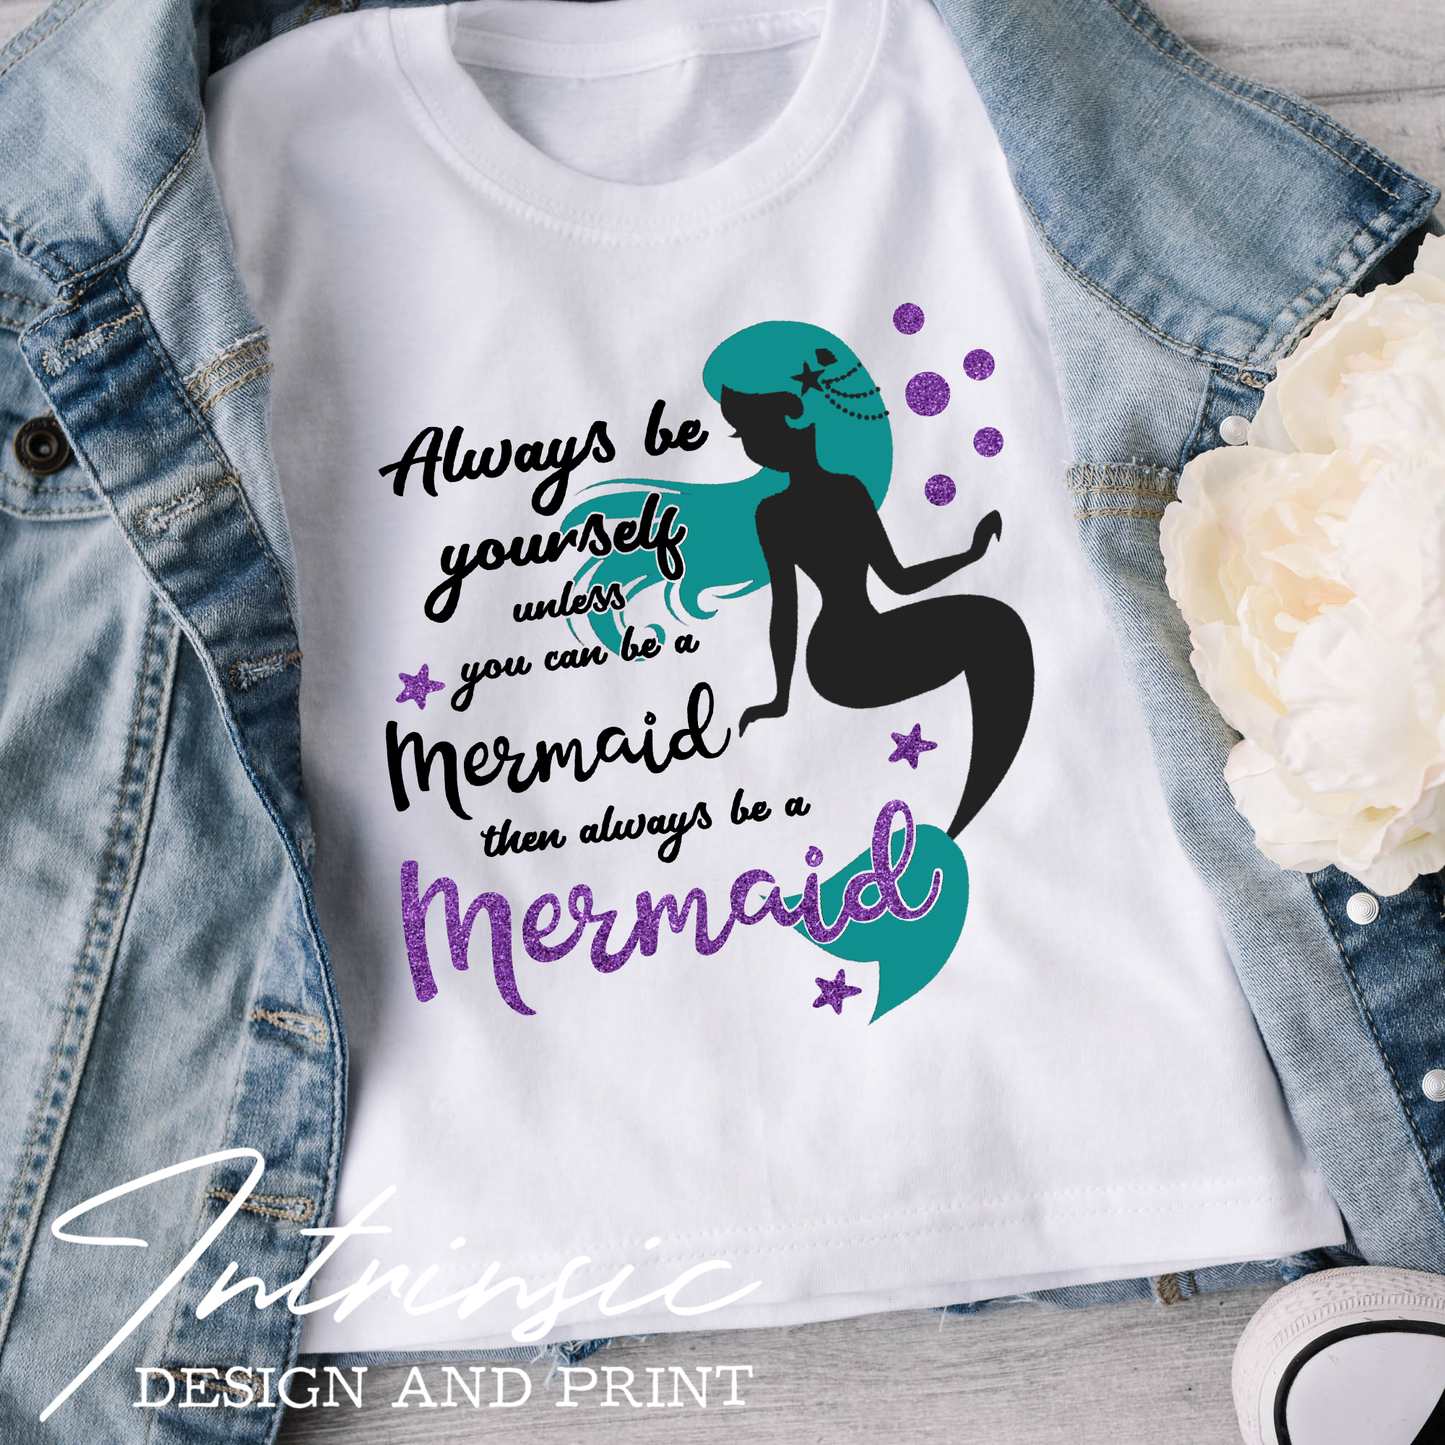 Always be a mermaid tee